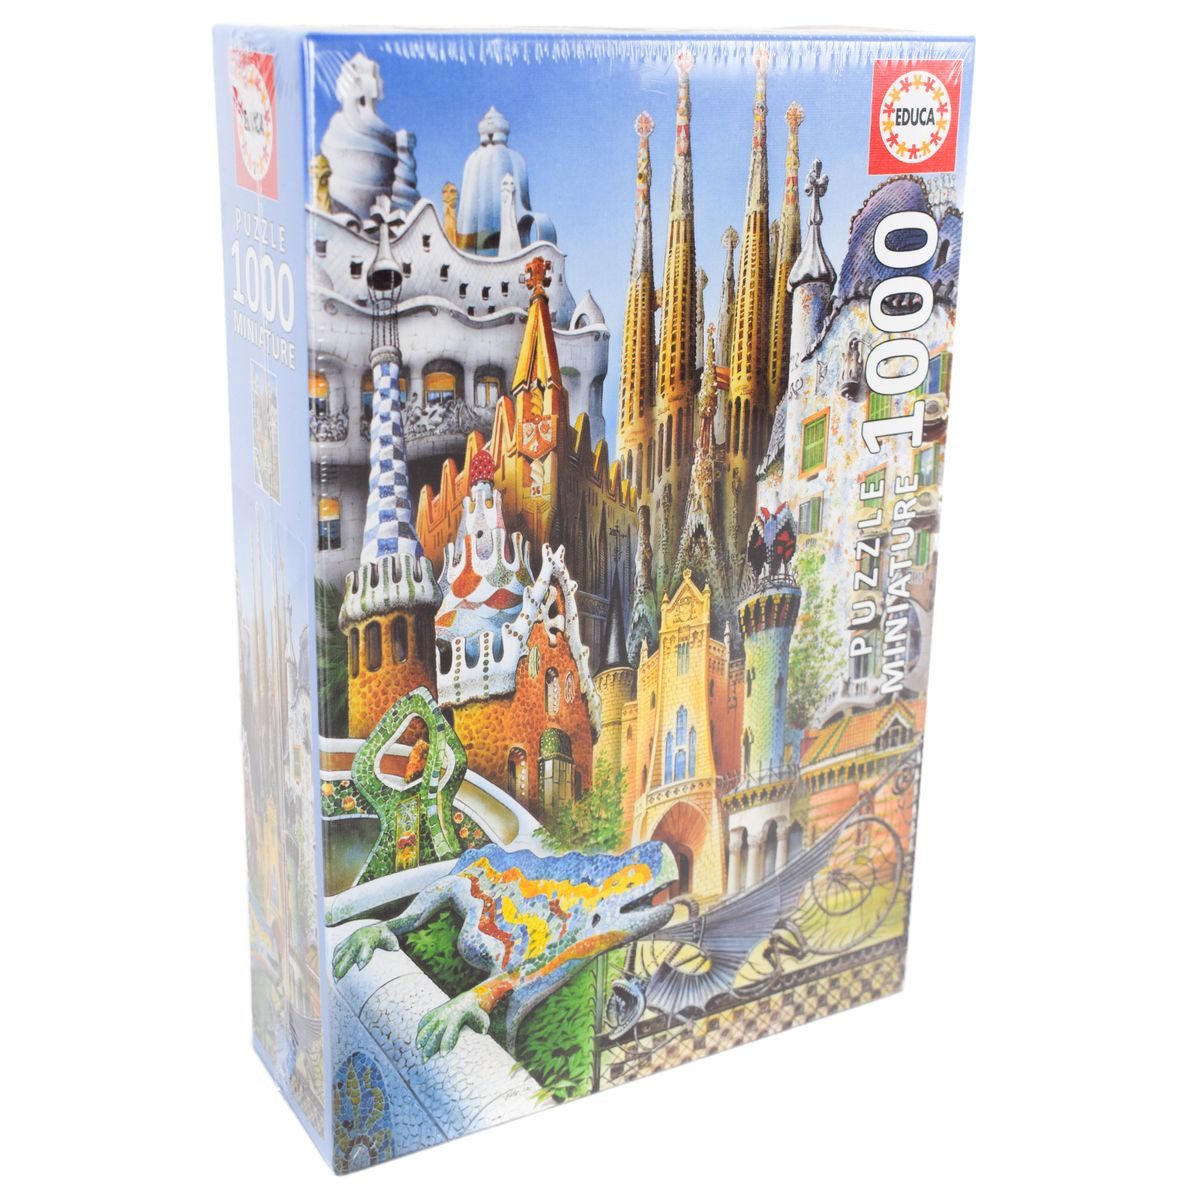 Educa Puzzle 1000 Teile Miniatur Puzzle 46 x 30 cm Collage Gaudi oder Wahrzeichen, 1000 Puzzleteile, farben- & kontrastreich